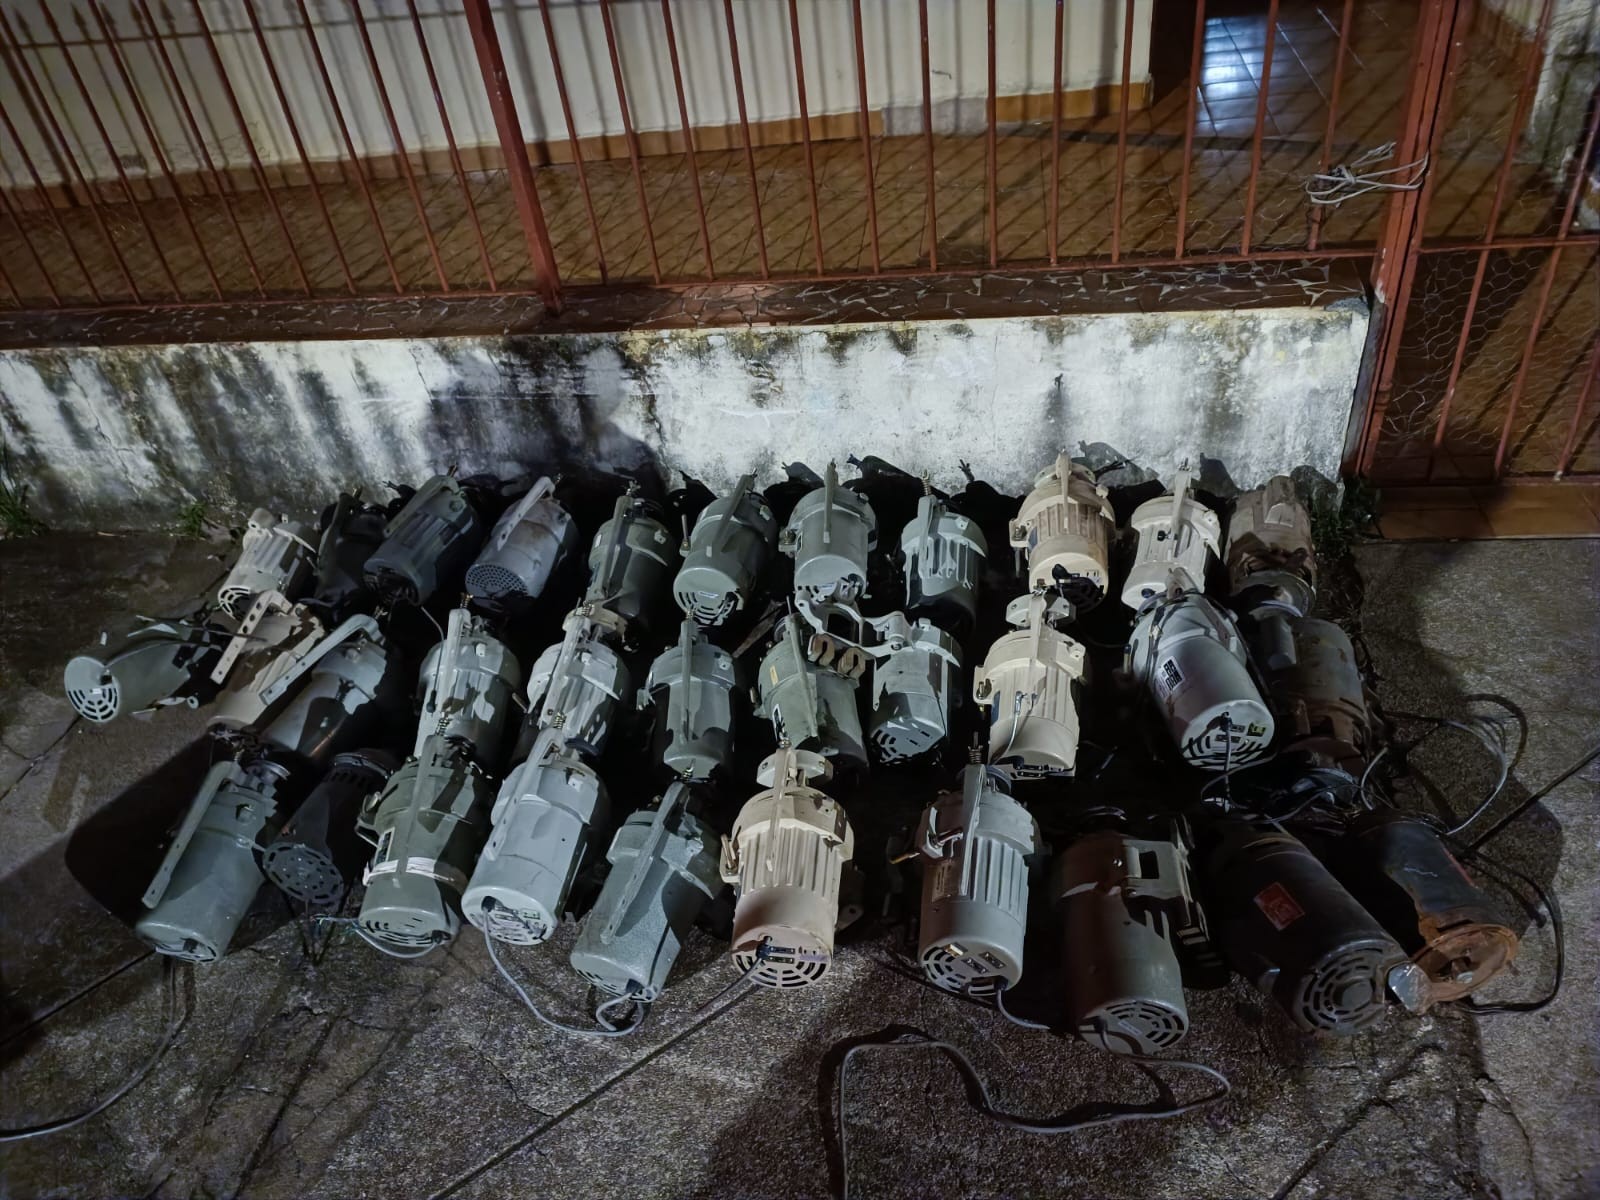 Jovens são presos suspeitos de furtar 32 motores de máquinas de costura industrial em Poços de Caldas